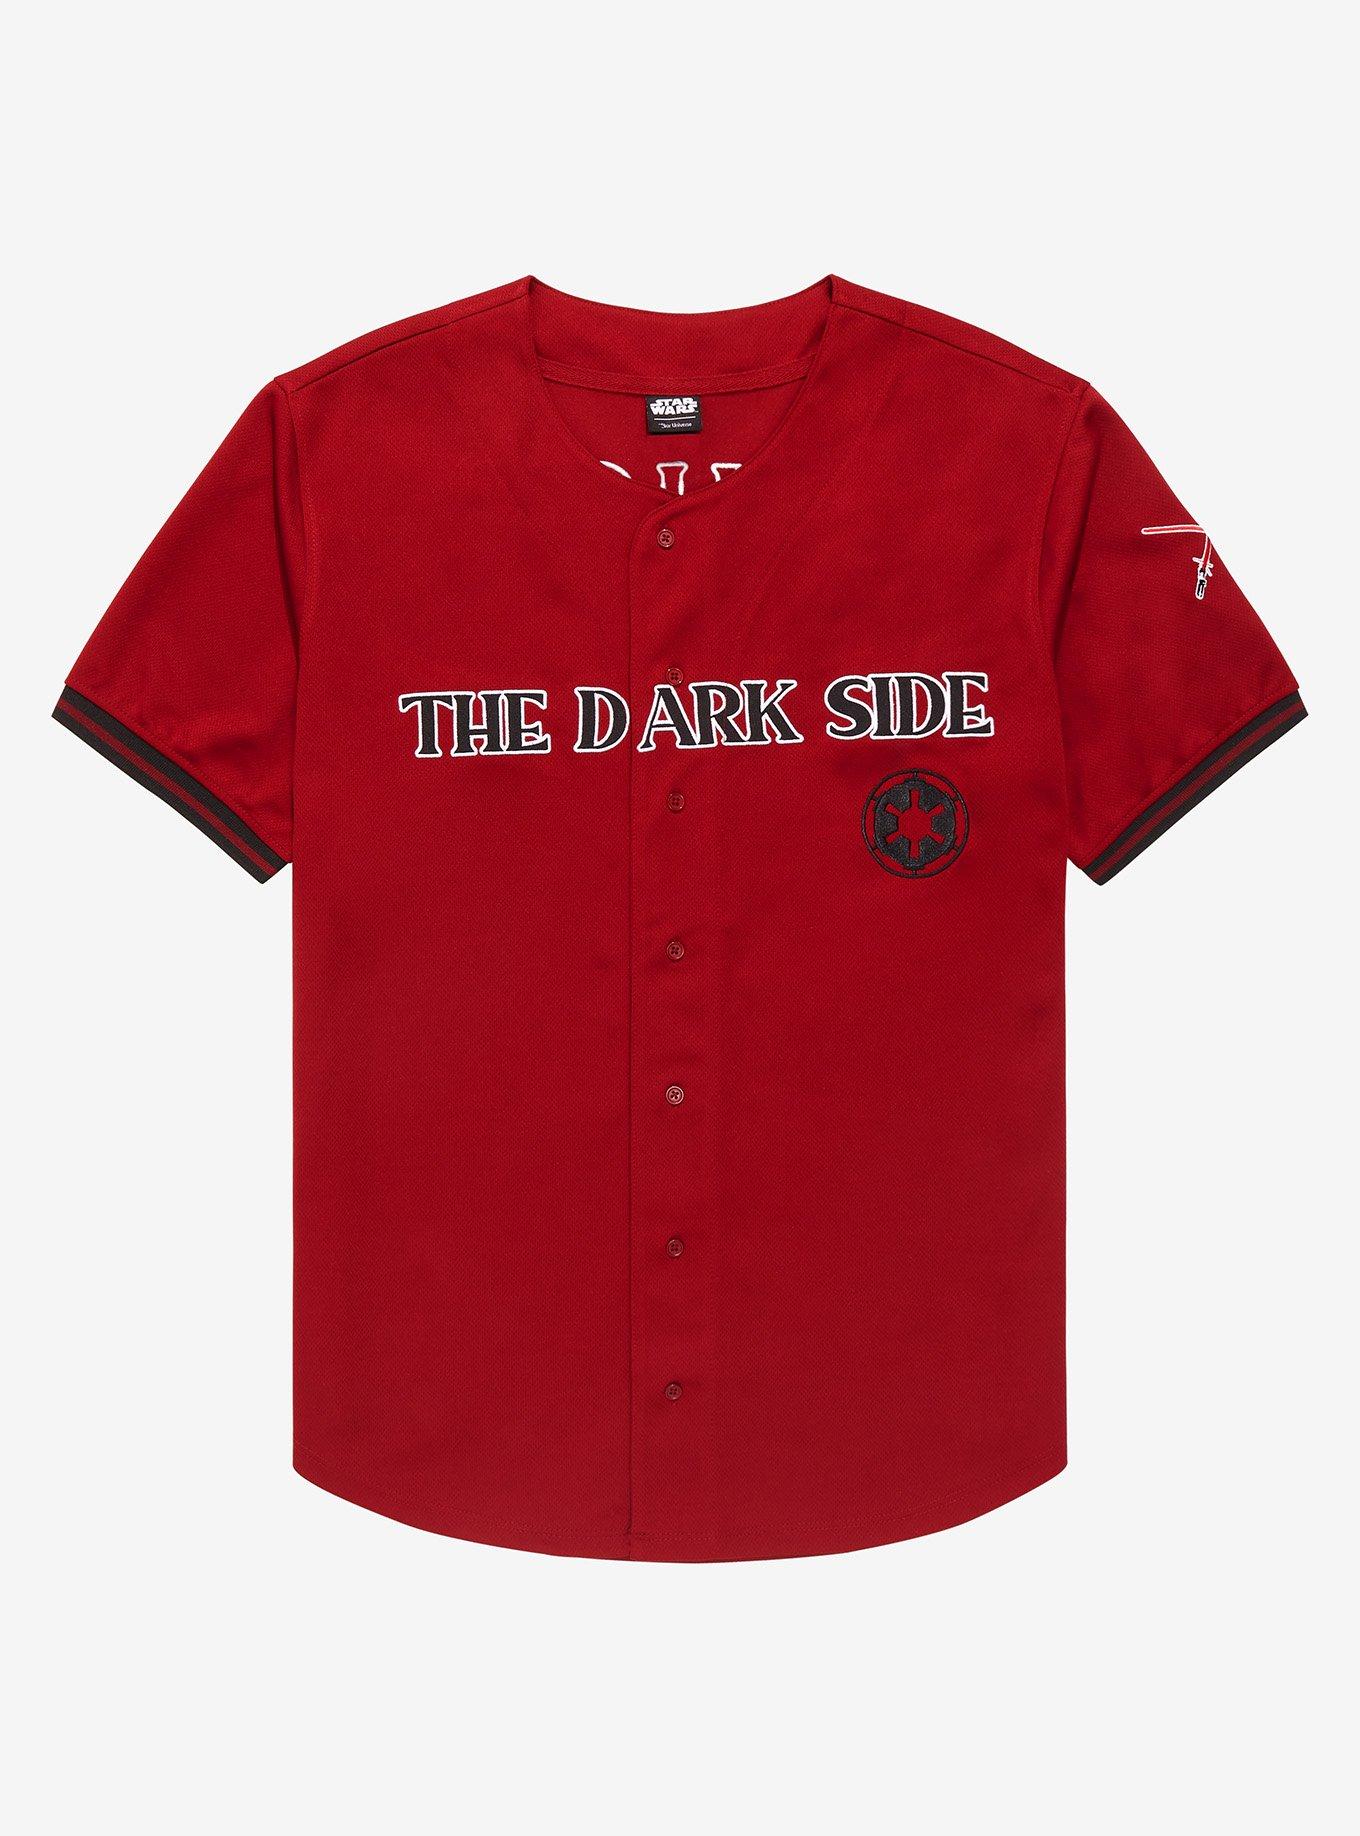 Dark Side Empire Full-Button Baseball Fan Jersey Adult Medium